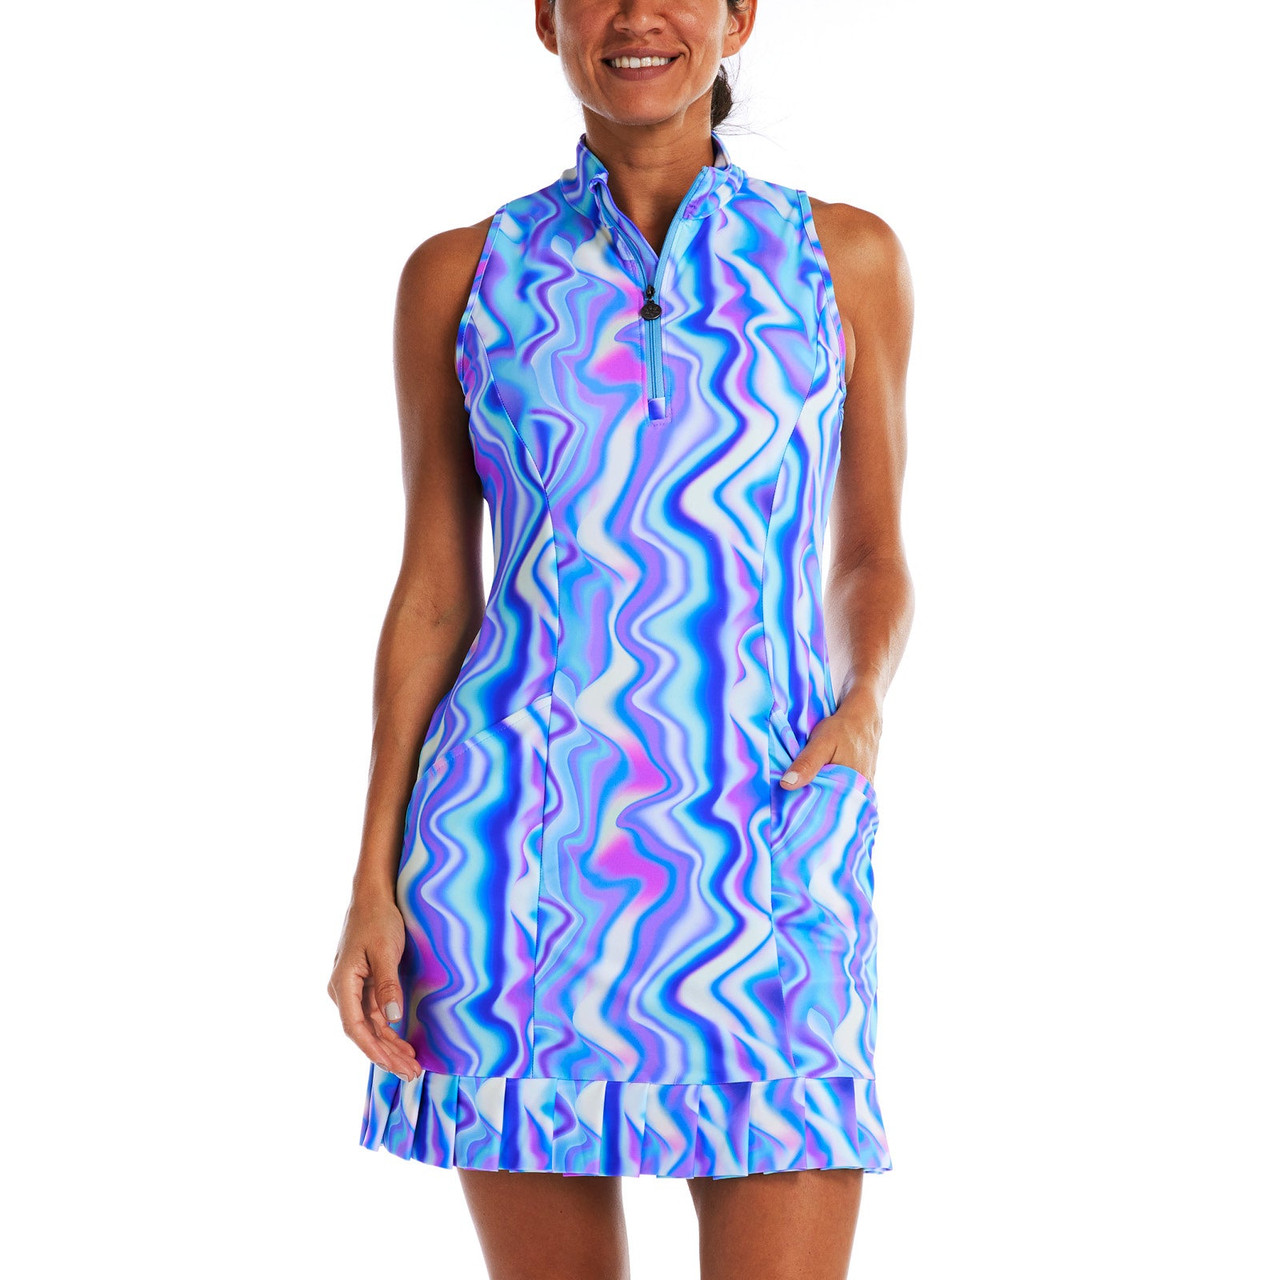 KYODAN OUTDOORS Golf Dress. Blue. Size Small NEVER WORN